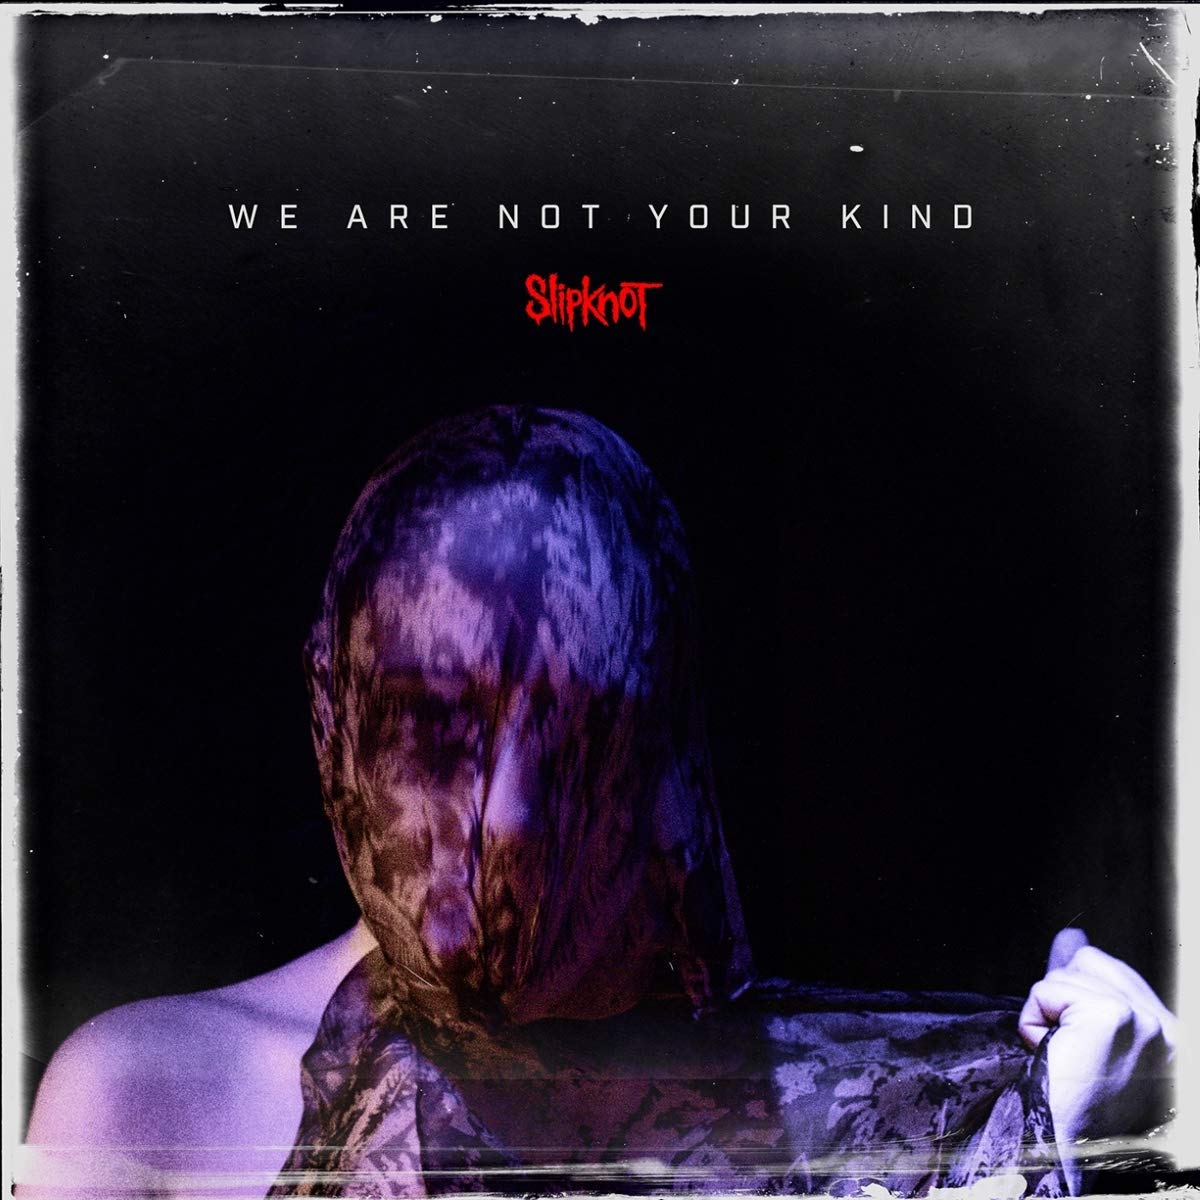 Slipknot "We Are Not Your Kind" Gatefold 2x12" 180g Black Vinyl